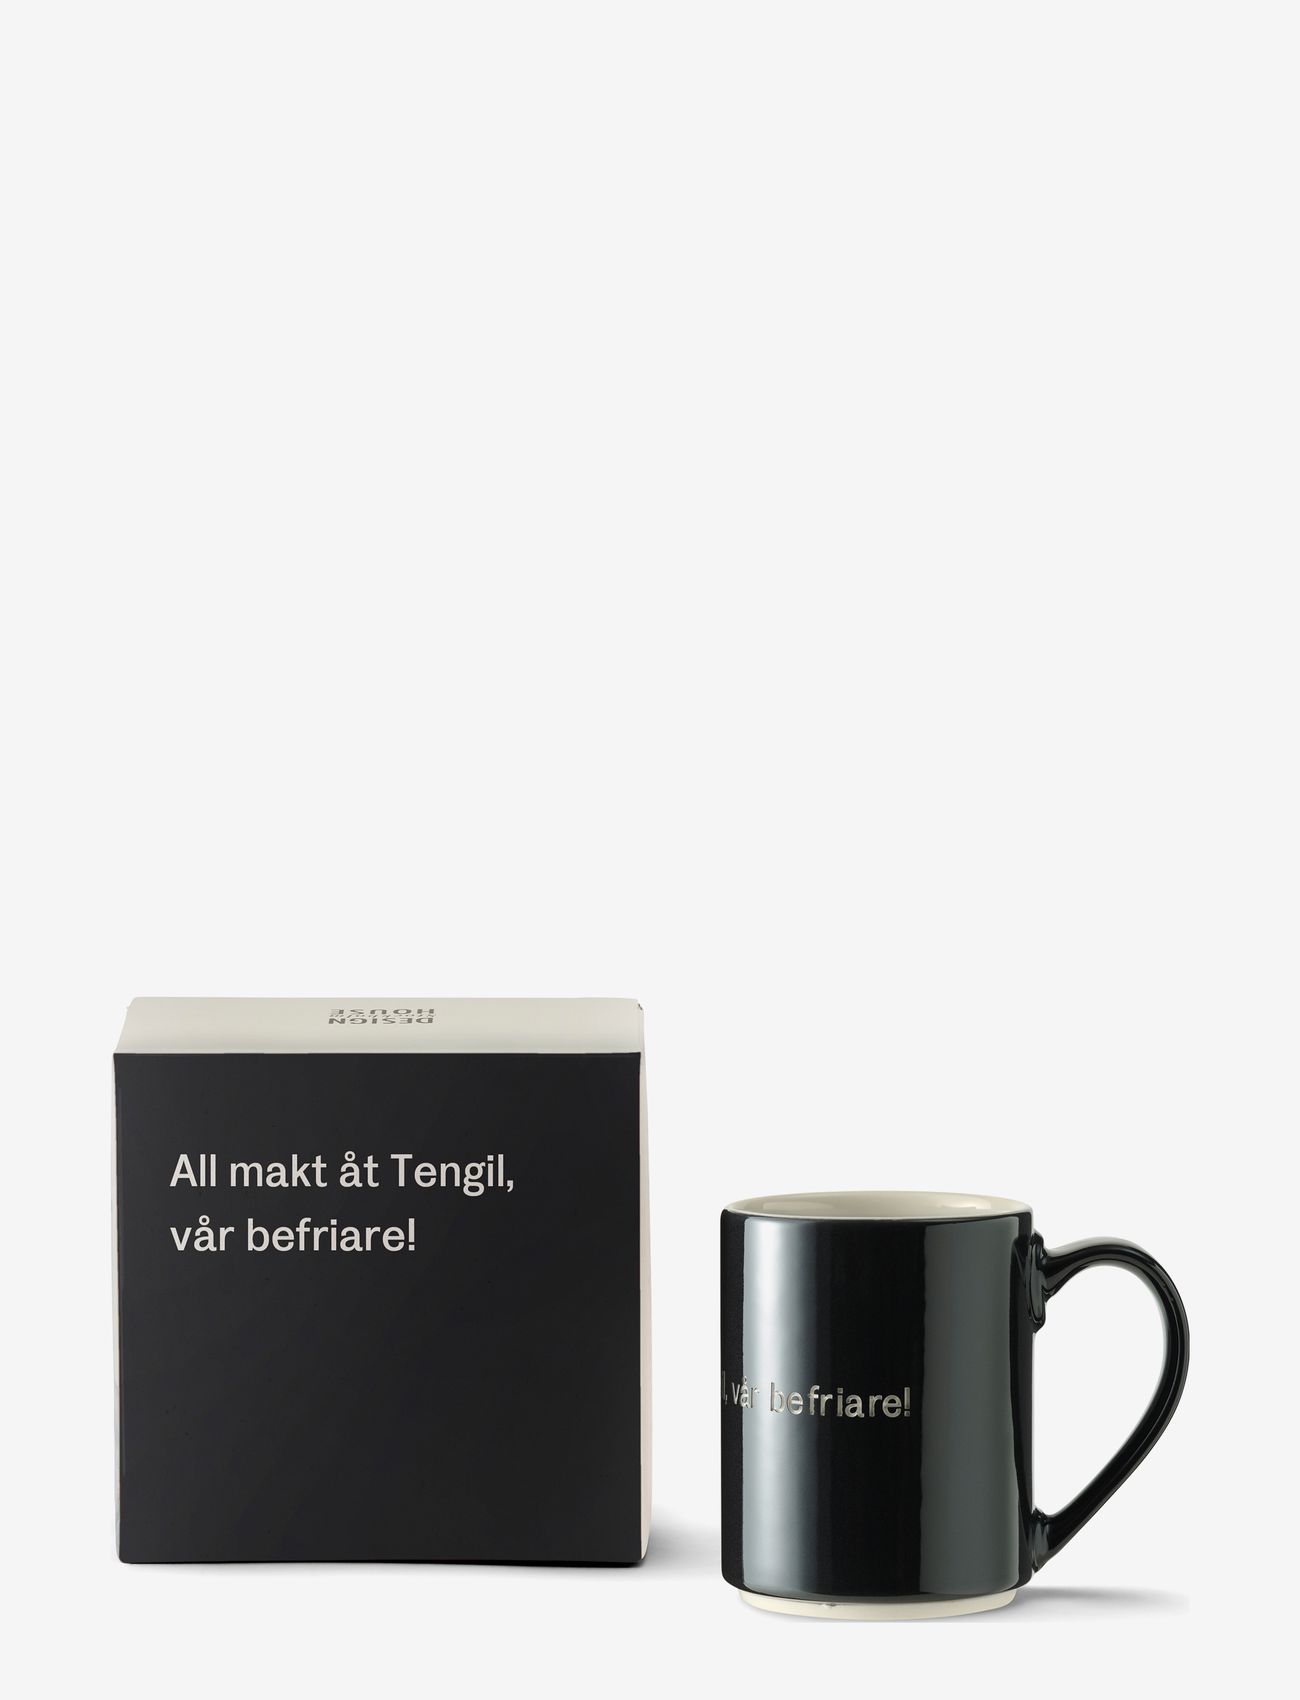 Design House Stockholm - Astrid Lindgren mug - lowest prices - black - 0